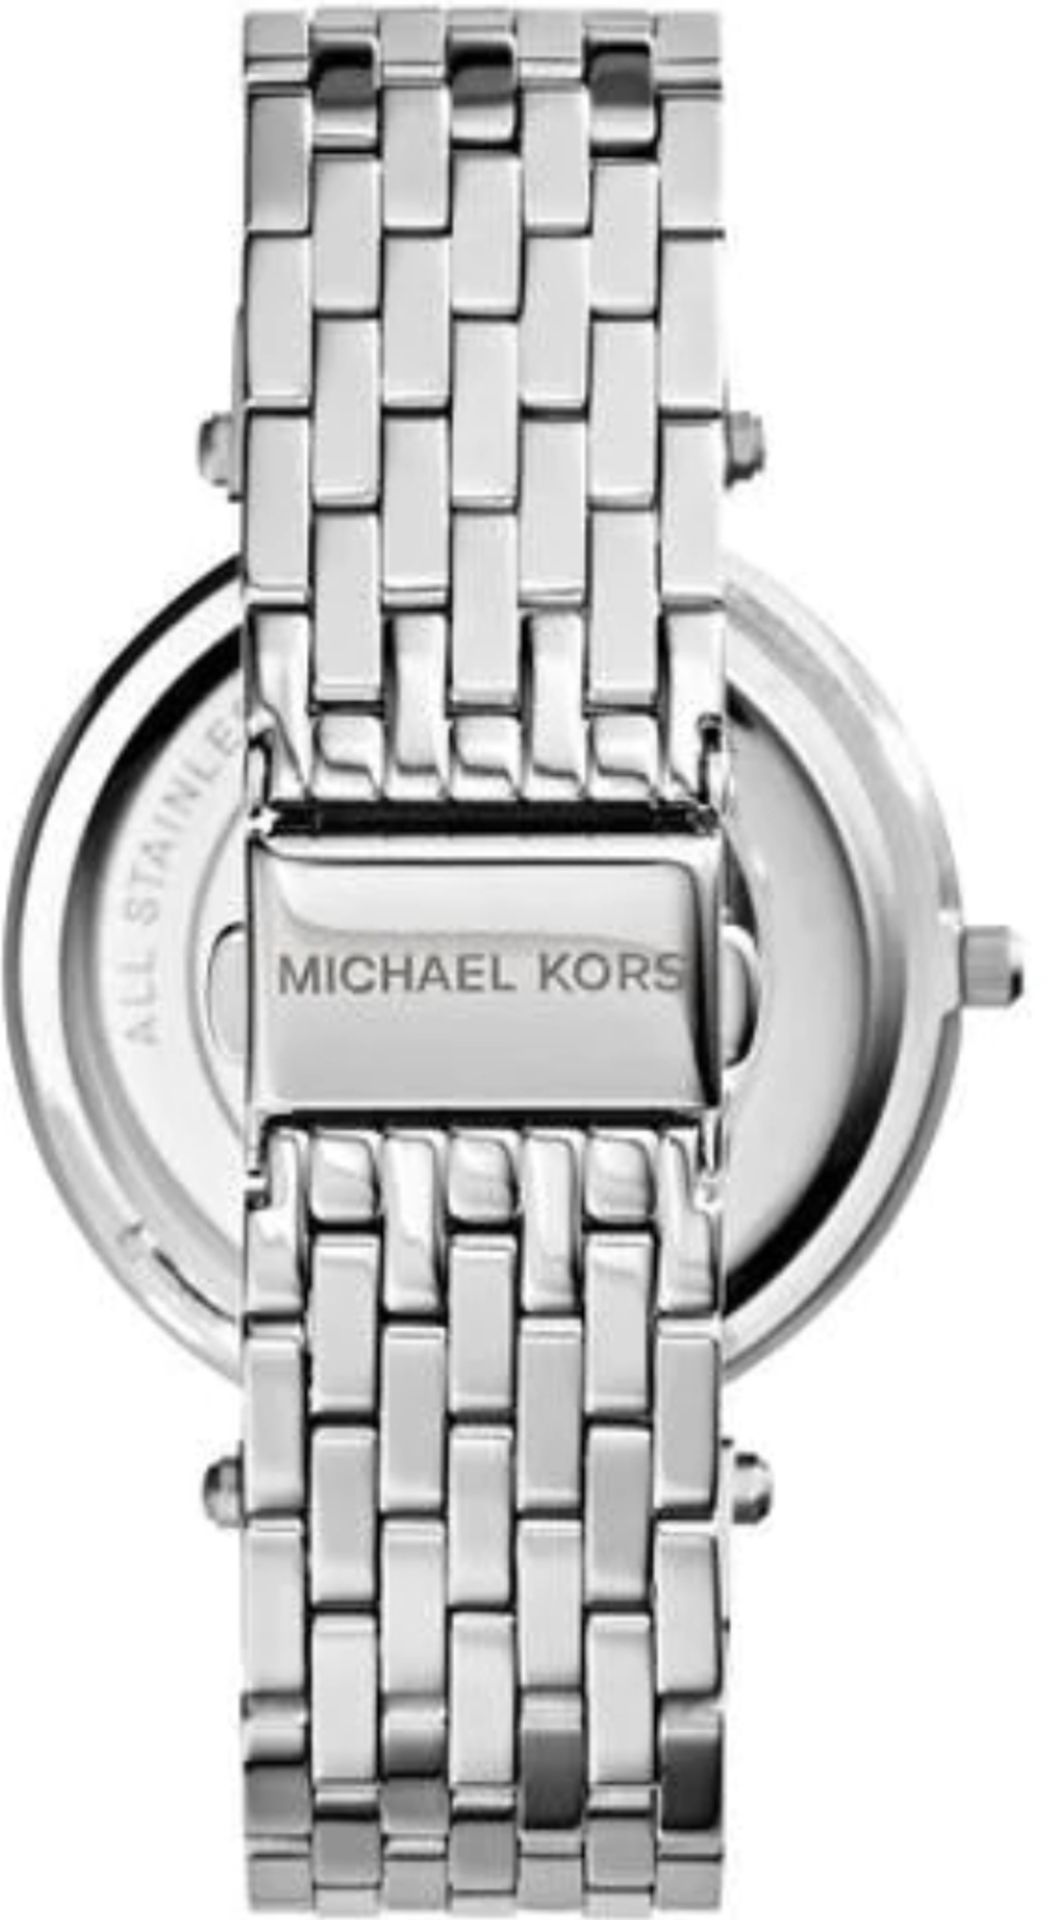 Michael Kors MK3352 Darci Pink & Silver Stainless Steel Ladies Watch - Image 5 of 8